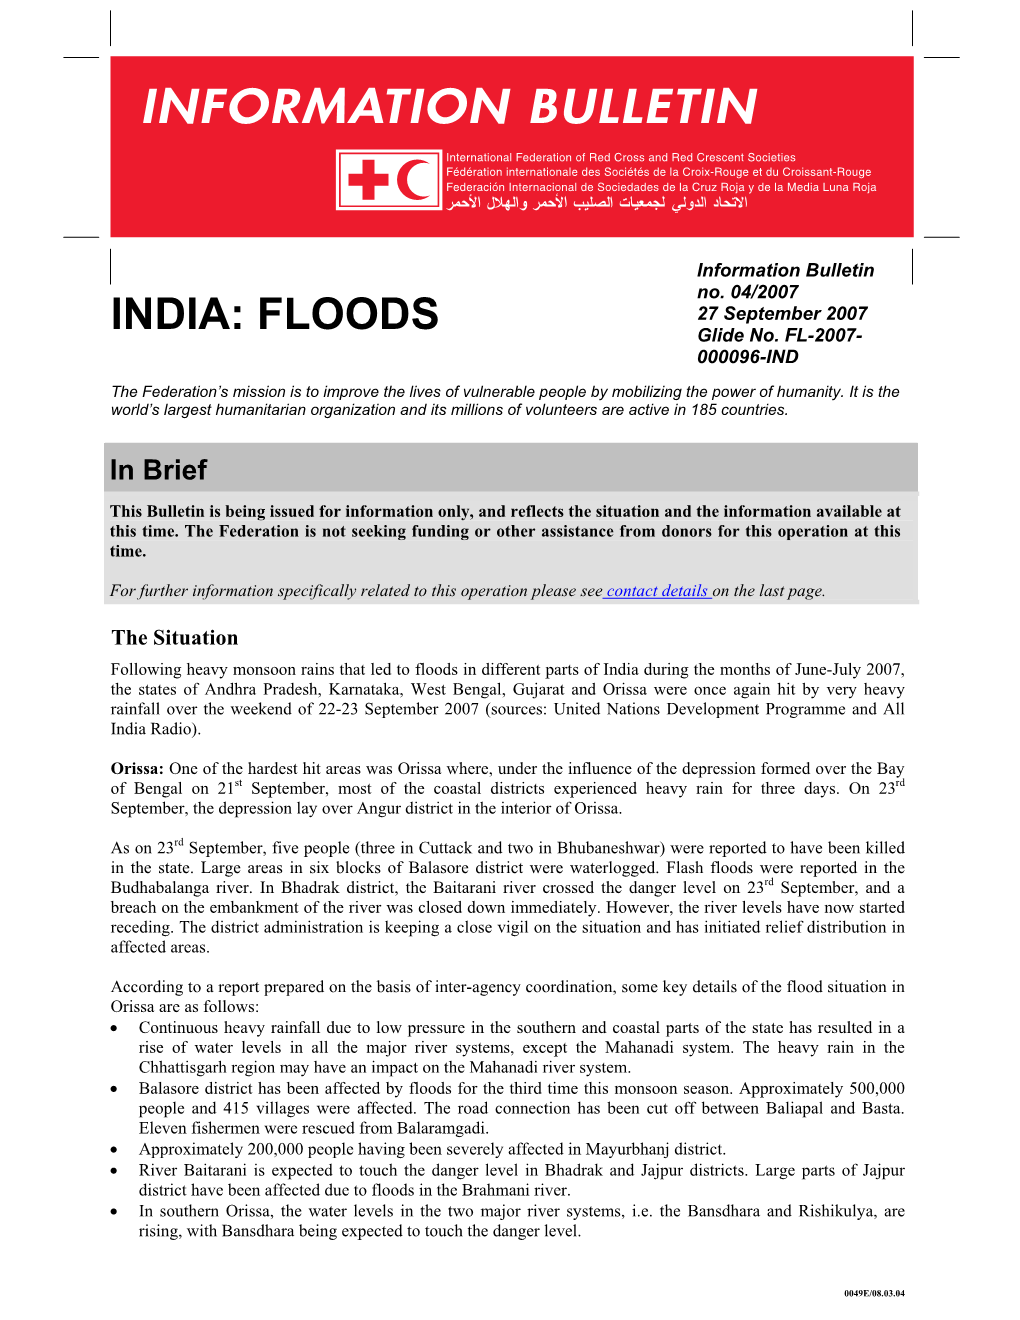 INDIA: FLOODS Glide No